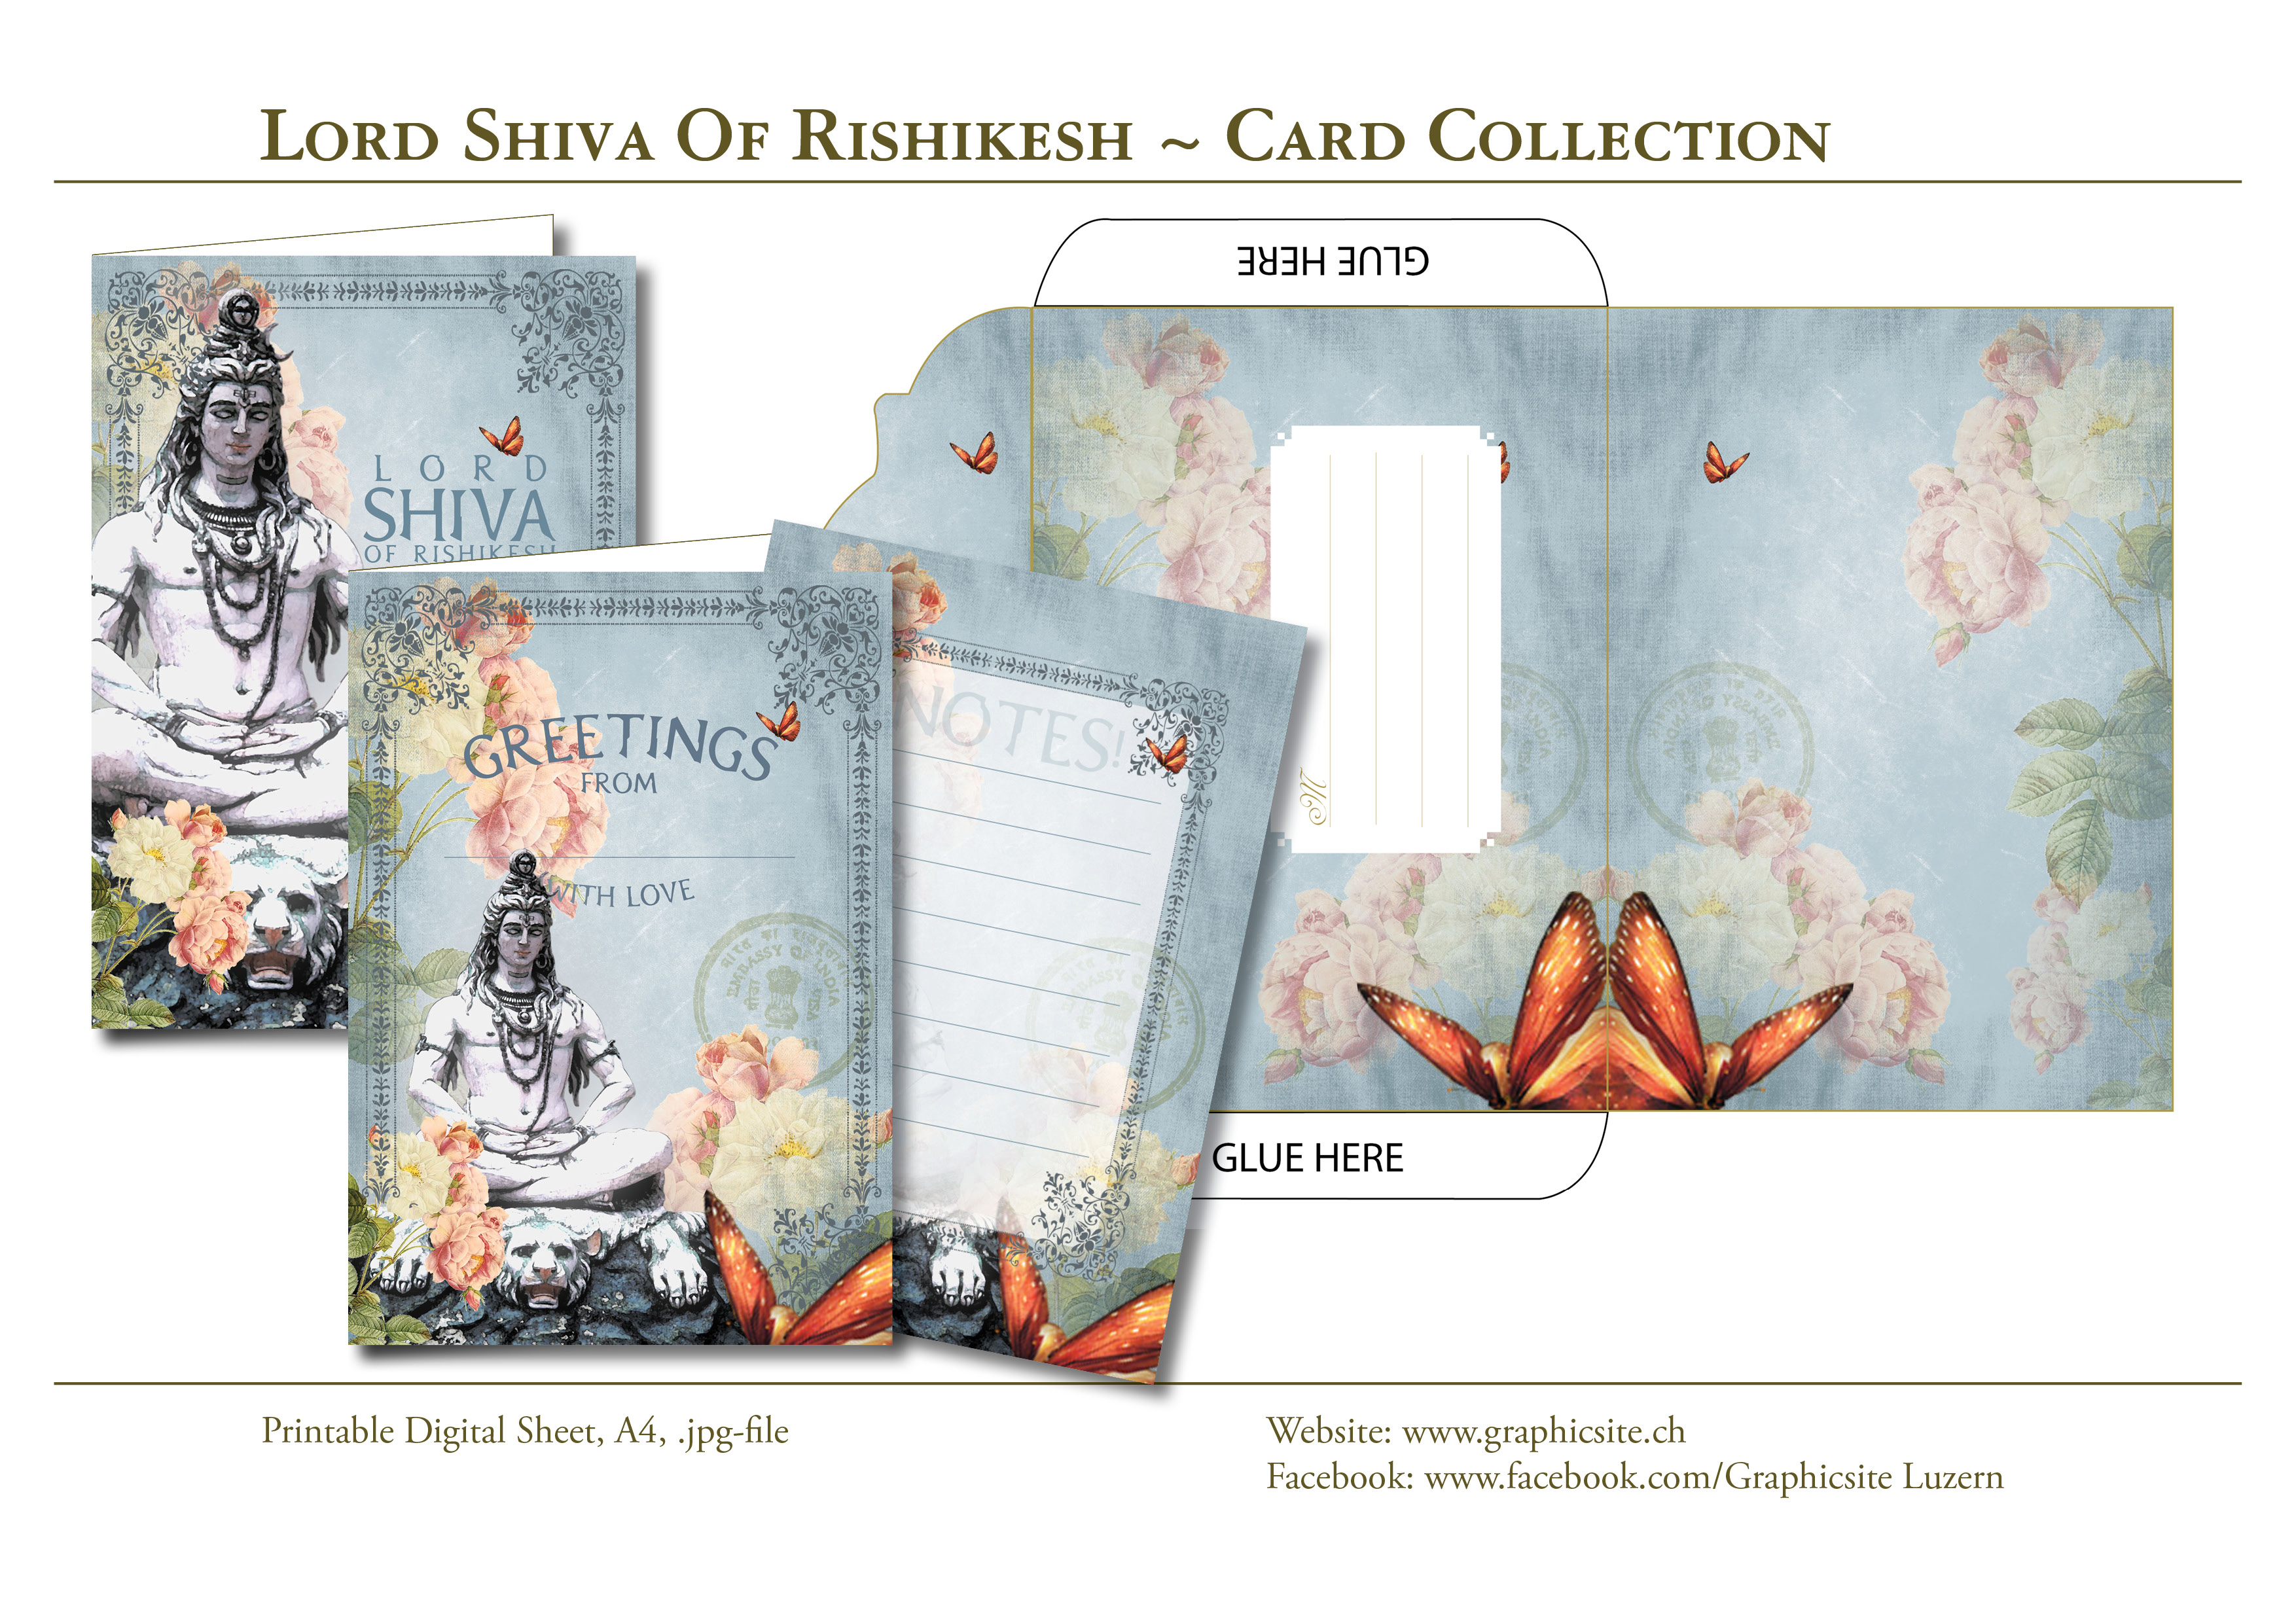 Karten selber drucken - Lord Shiva - Karten, Grusskarten, Kuvert, Grafiker Luzern, Schweiz